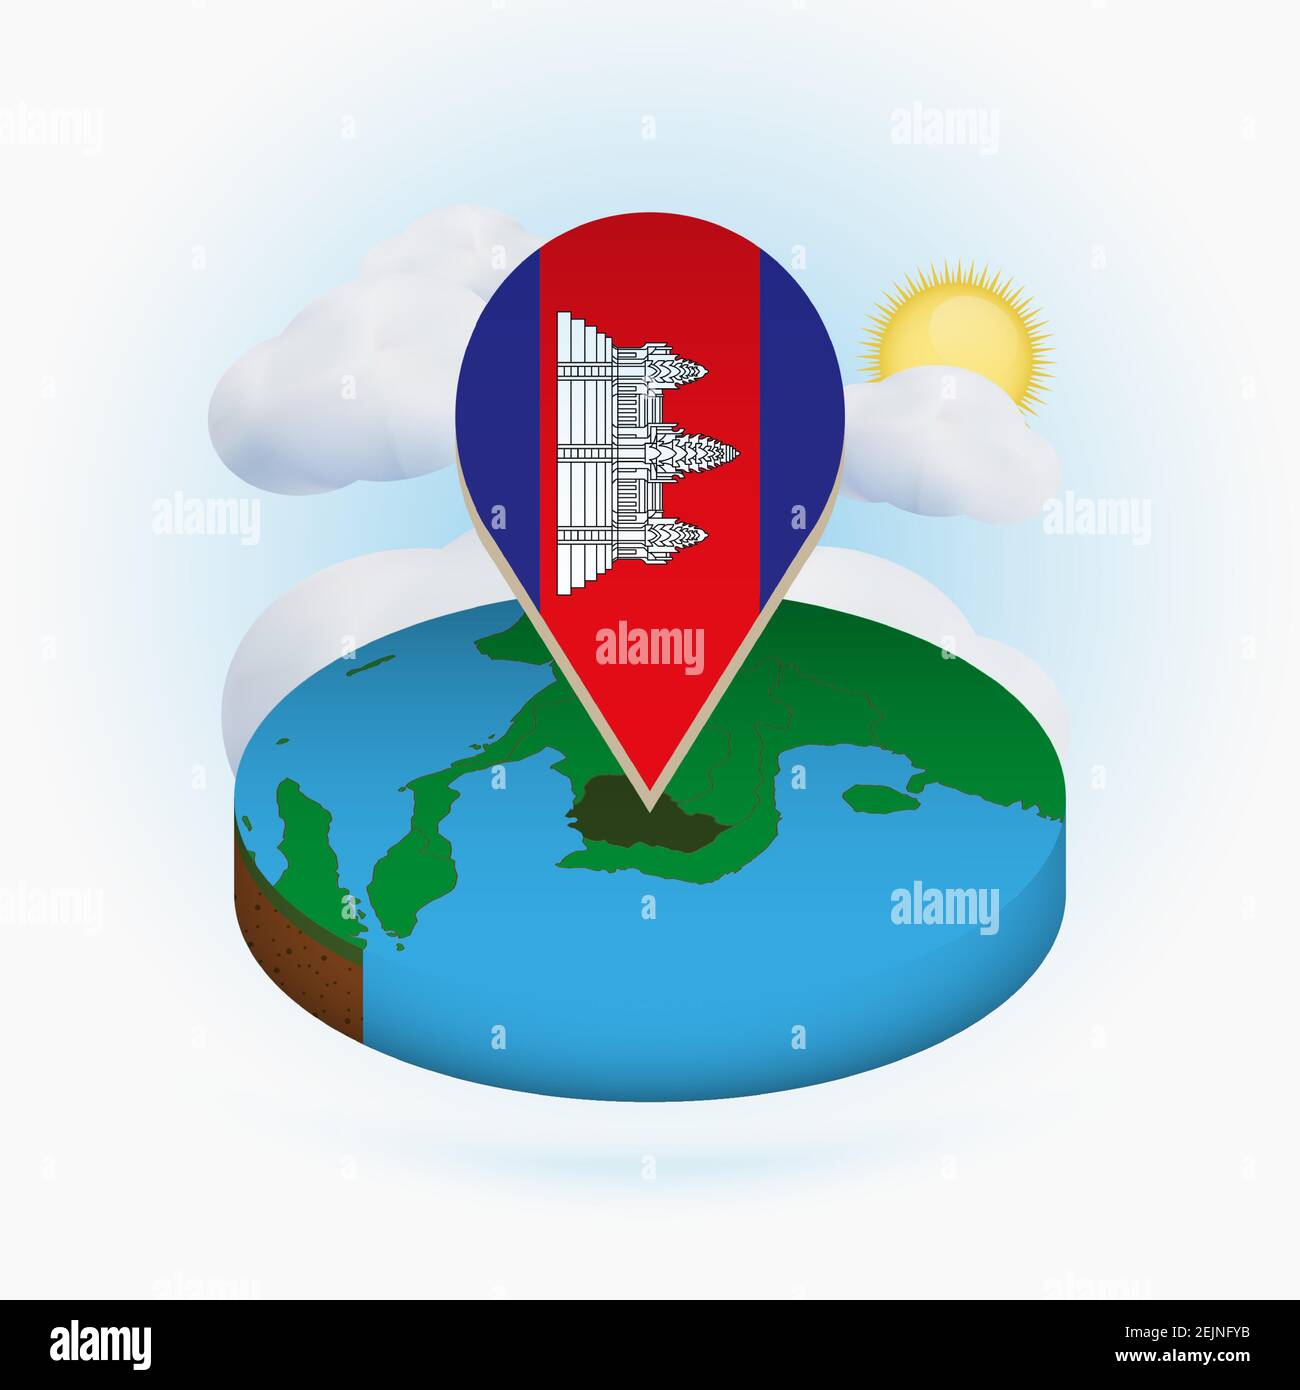 Isometrische Rundkarte von Kambodscha und Punktmarkierung mit Flagge von Kambodscha. Wolke und Sonne im Hintergrund. Isometrische Vektordarstellung. Stock Vektor